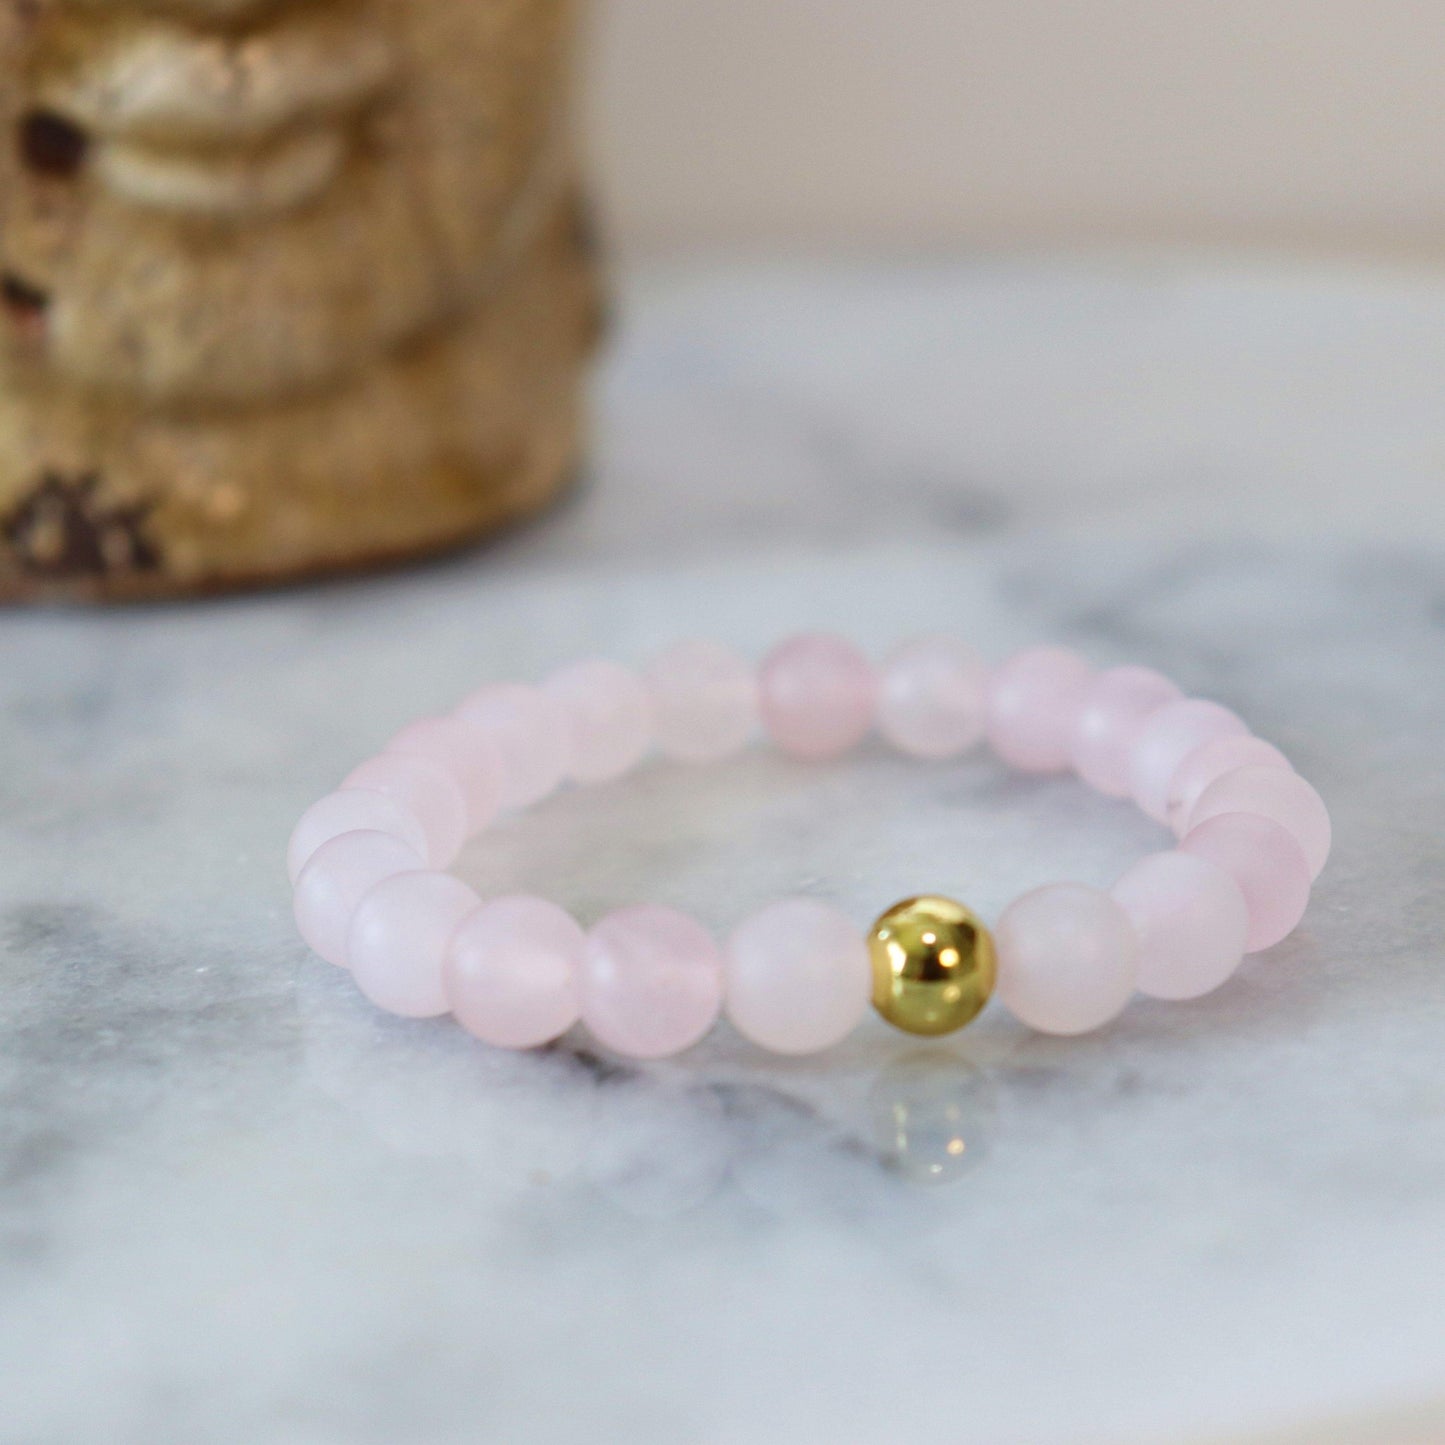 Matte Rose Quartz Gemstone Bracelet | Unconditional love, Self-love, and Kindness - Alora Boutique